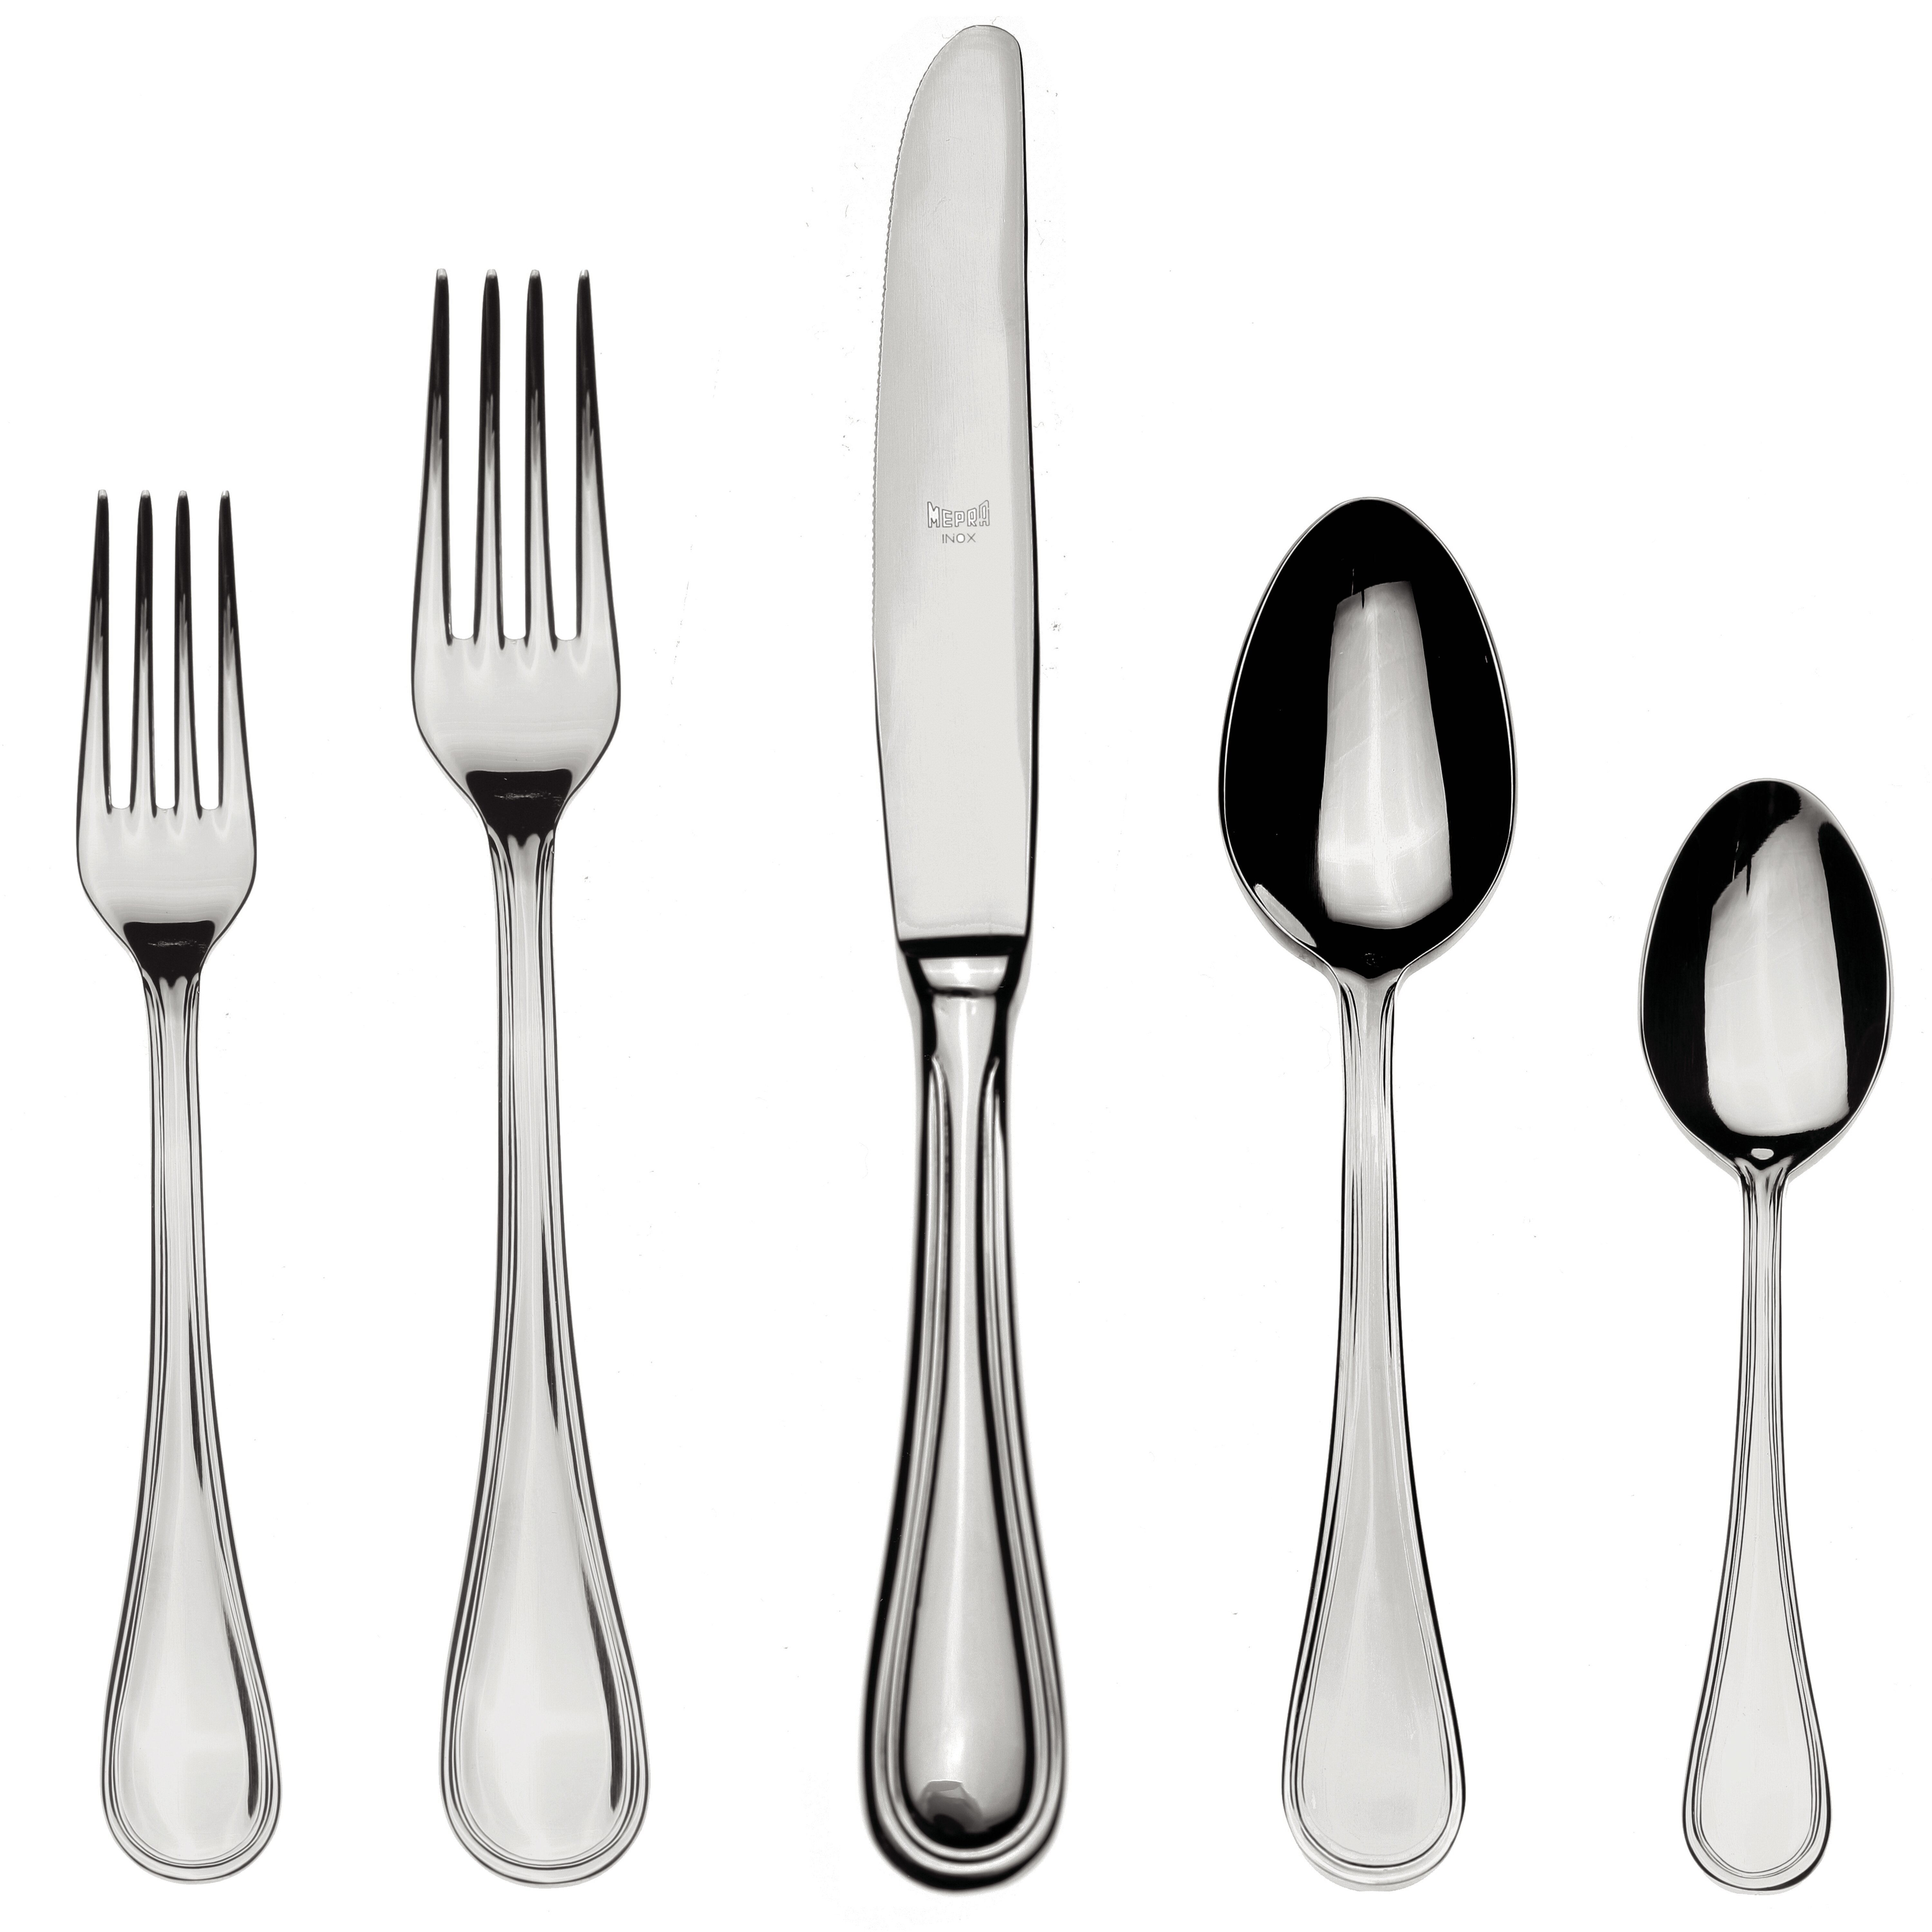 https://assets.wfcdn.com/im/51925069/compr-r85/6857/68577567/mepra-cutlery-set-5-pcs-boheme-stainless-steel.jpg